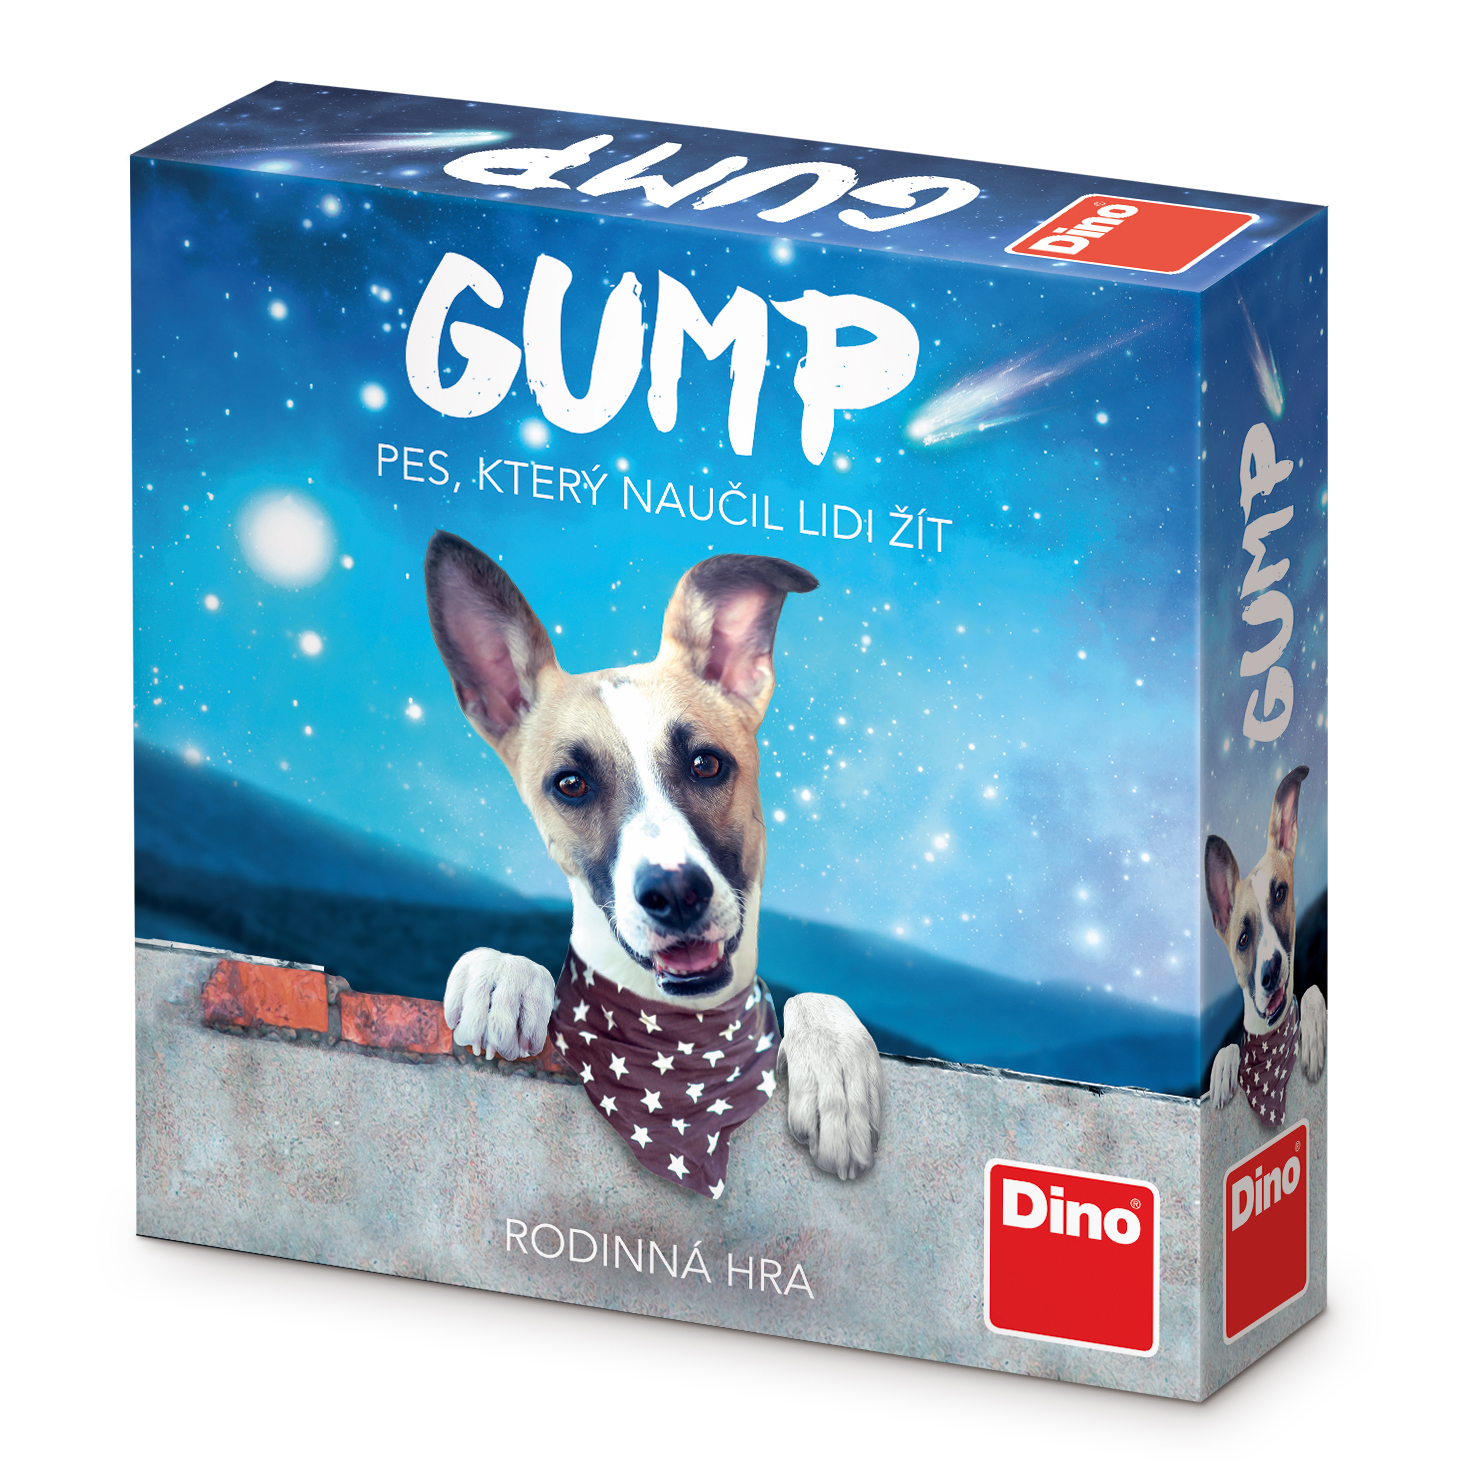 Rodinná hra GUMP – Pes, který naučil lidi žít